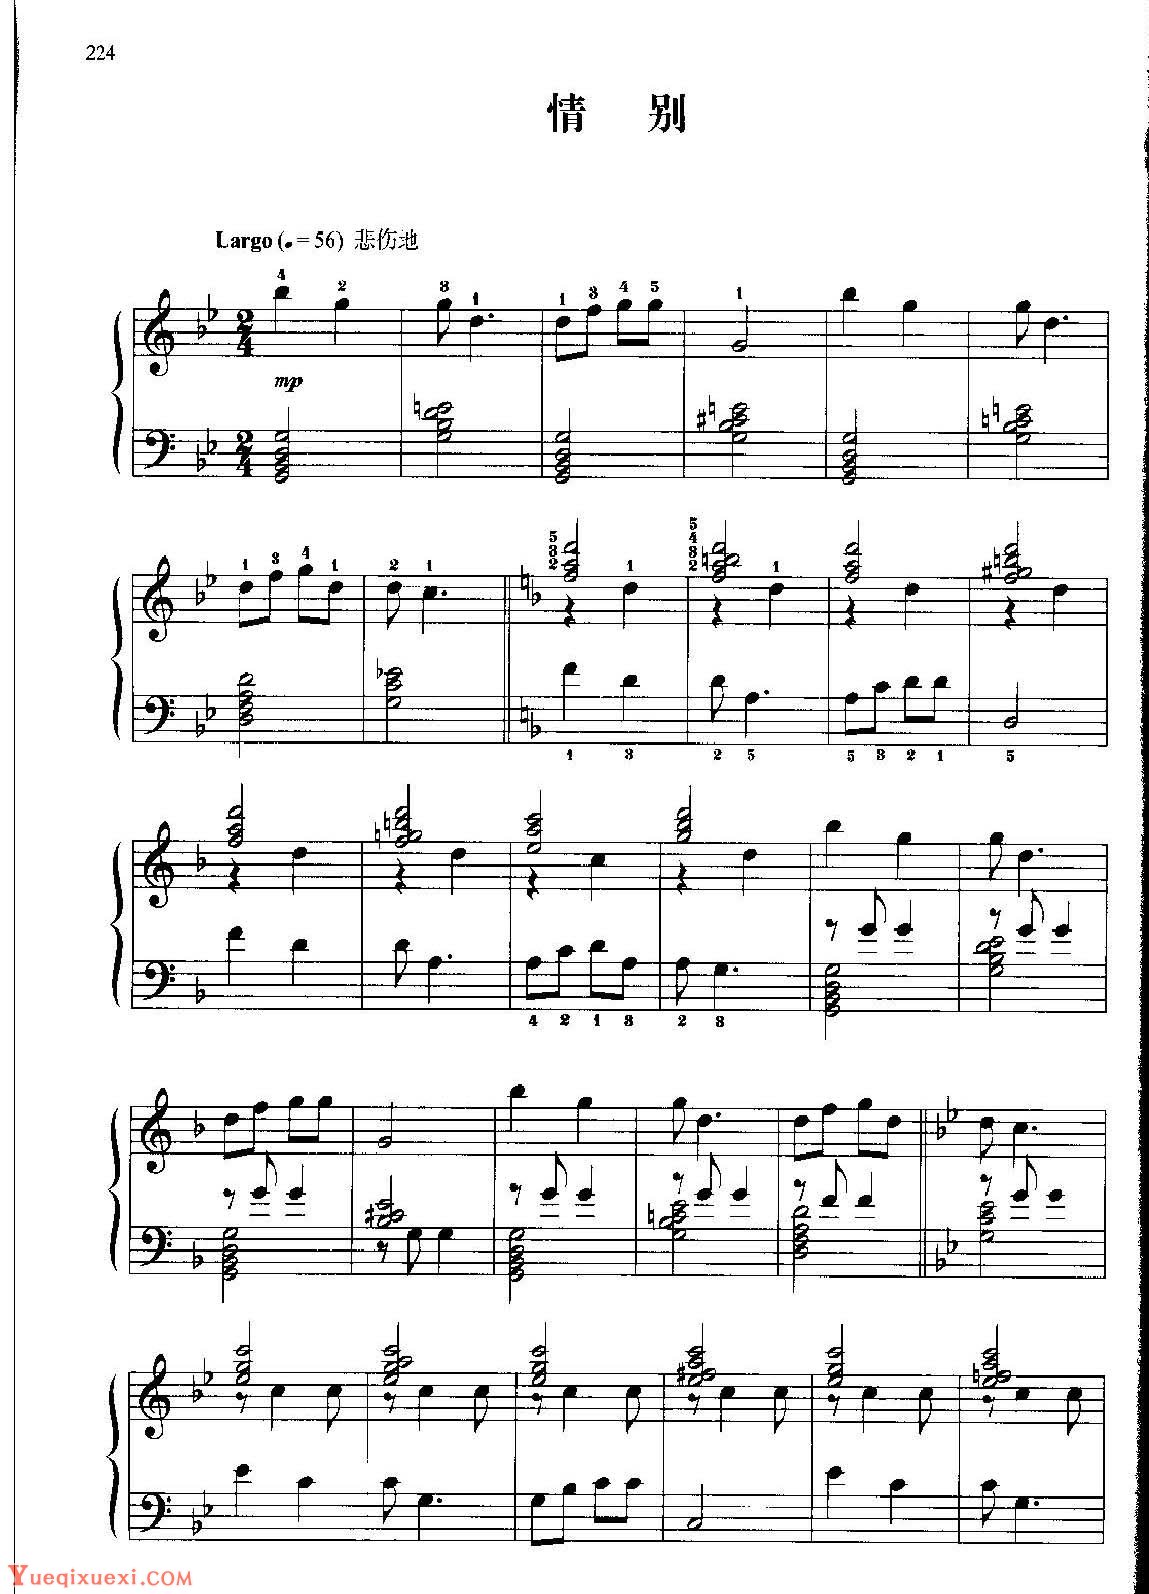 中国民歌钢琴小曲《情别》